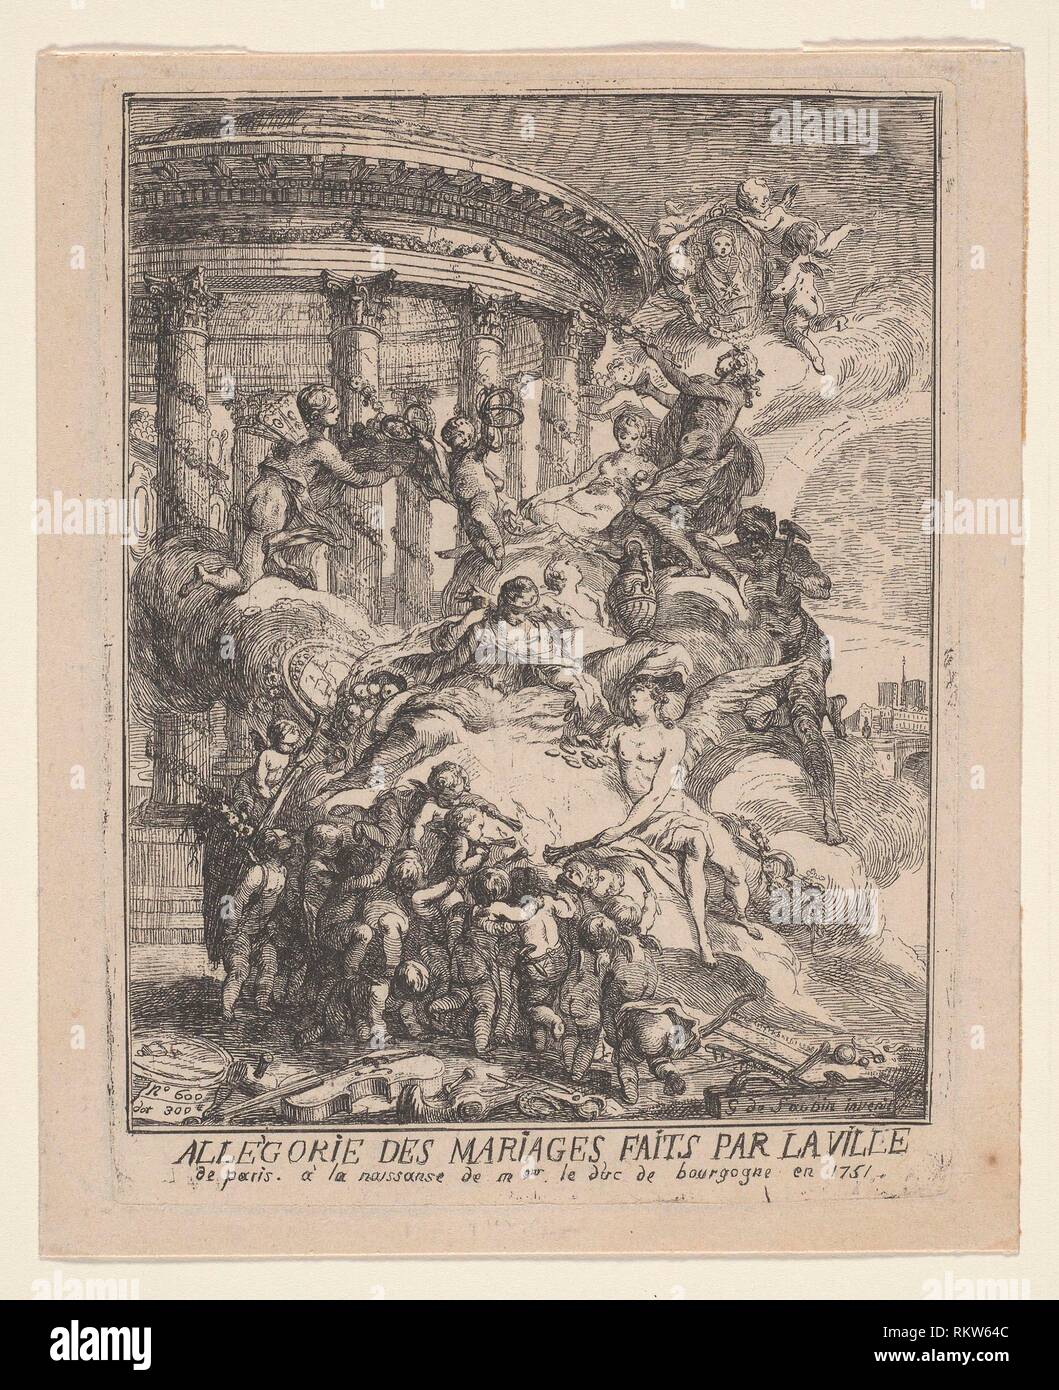 Allegorie des Mariages Faits par la Ville de Paris a la Naissance du Duc de Bourgogne - 1751 - Gabriel Jacques de Saint-Aubin French, 1724-1780 - Stock Photo